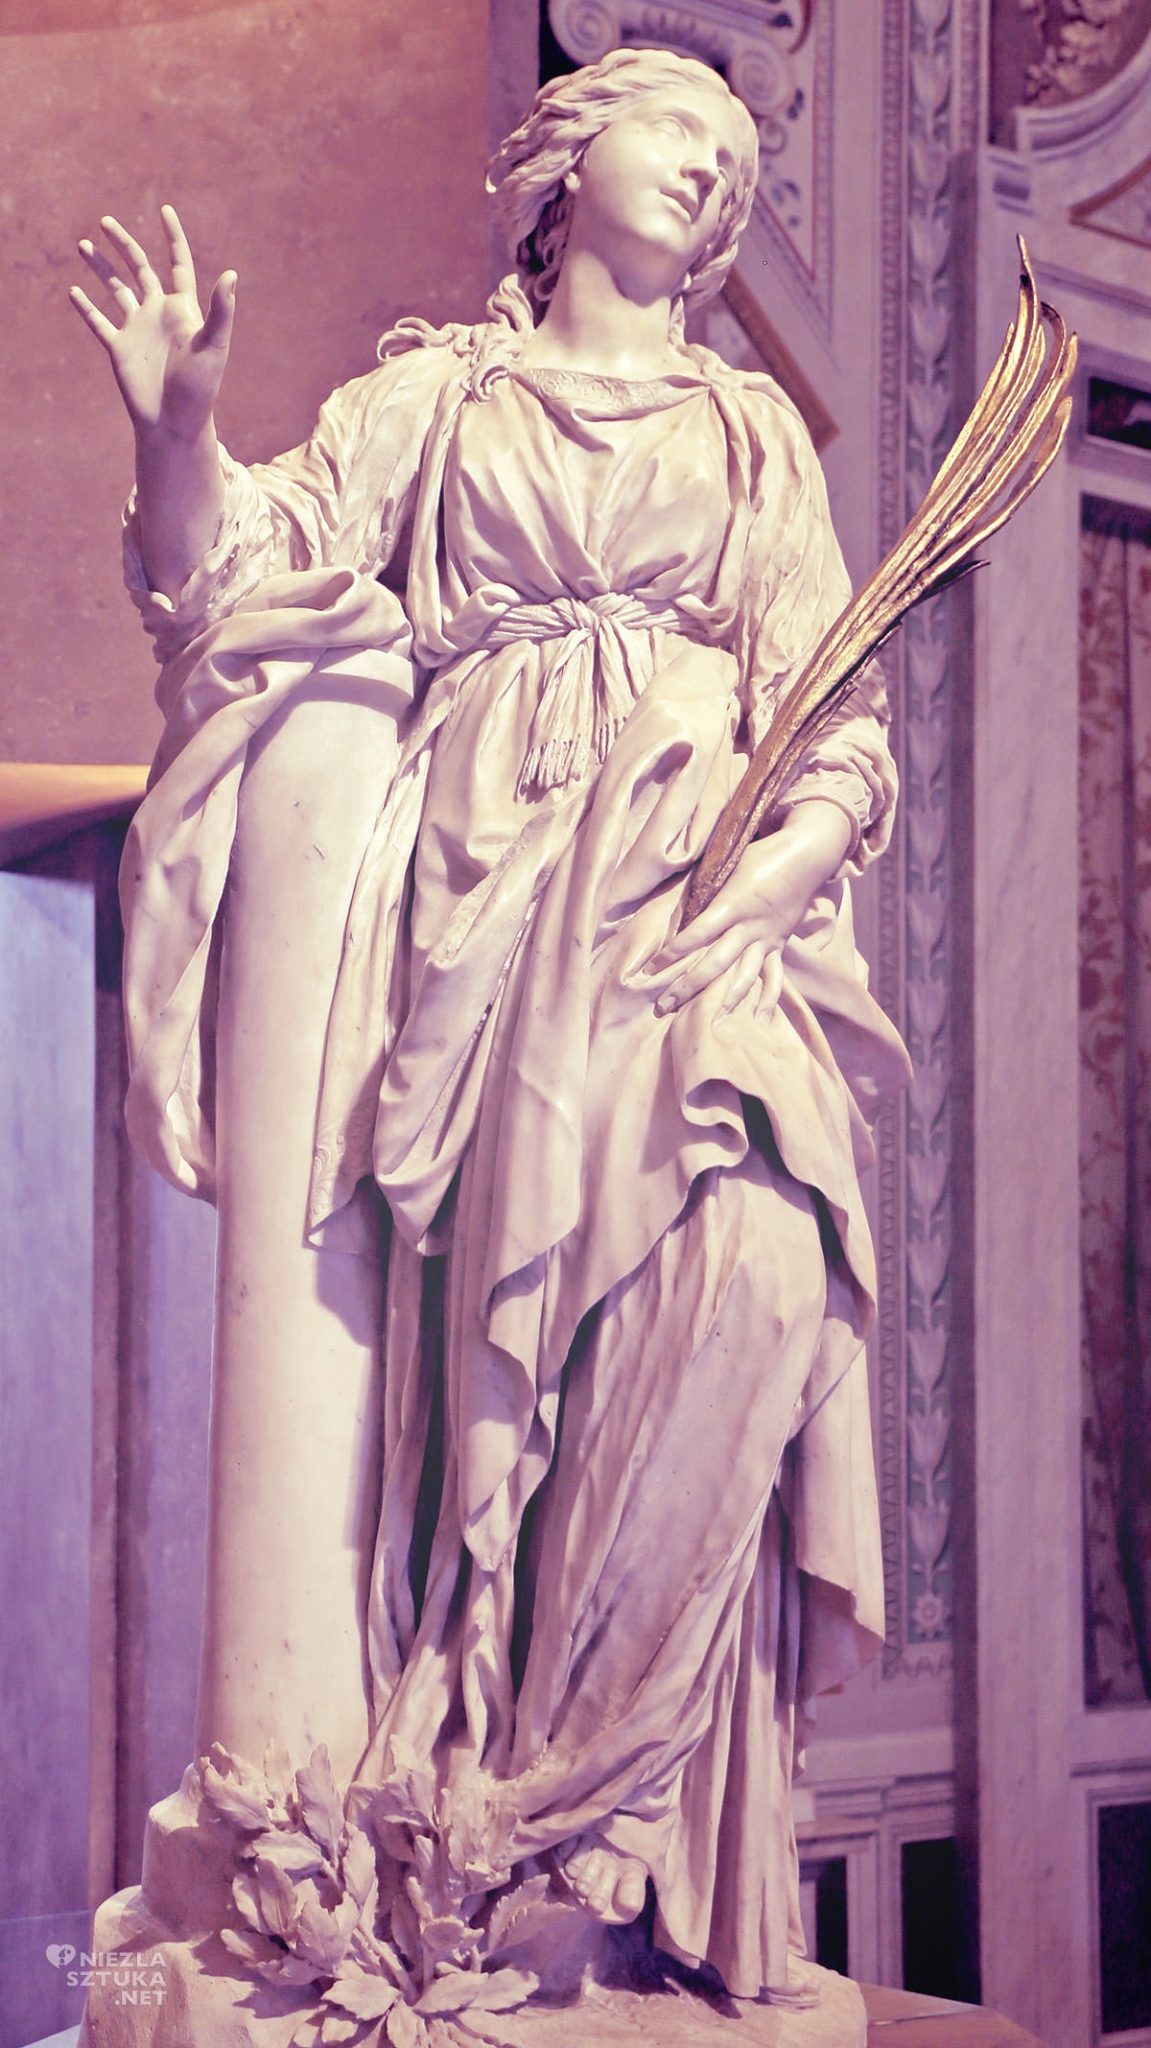 Gian Lorenzo Bernini, święta Bibiana, Kościół Santa Bibiana, sztuka włoska, rzeźba, Rzym, przewodnik po Rzymie, sztuka w Rzymie, Niezła sztuka